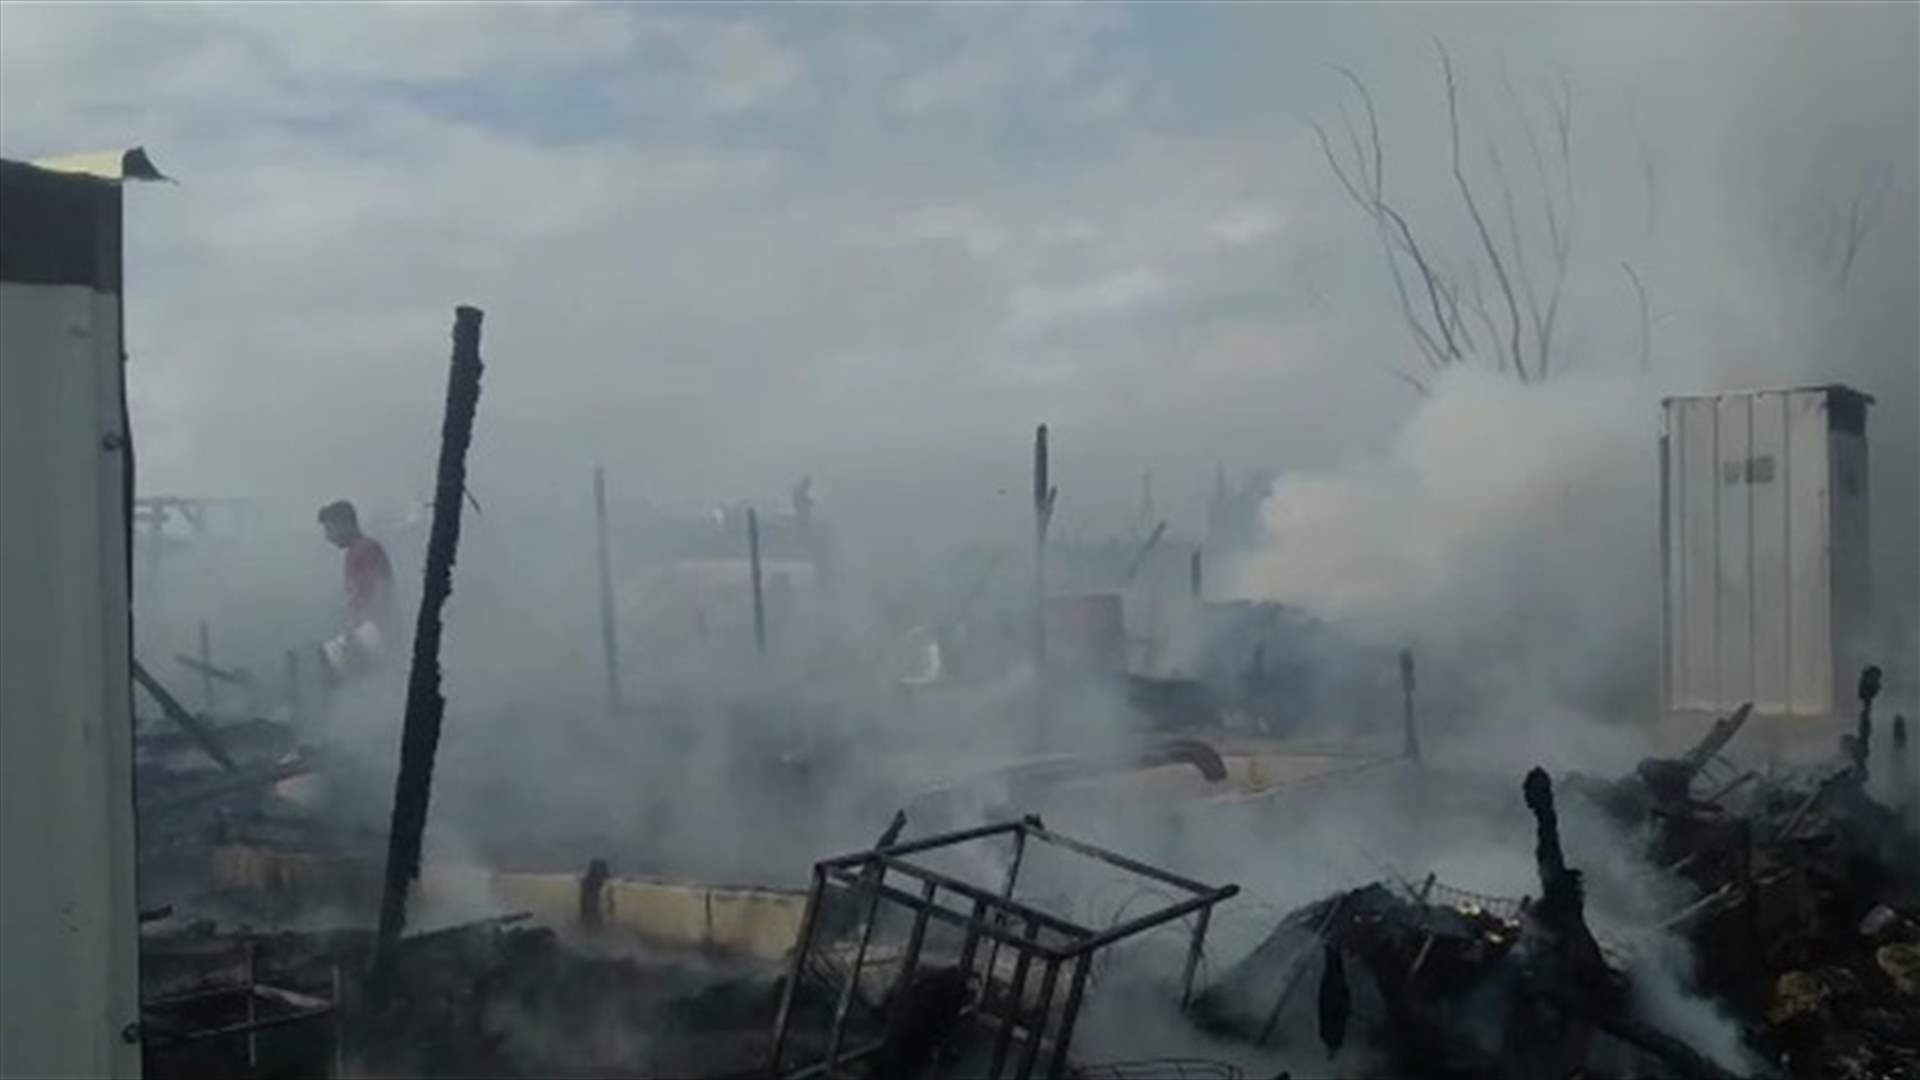 حريق كبير في مخيم للنازحين خراج ابل السقي - مرجعيون (فيديو)